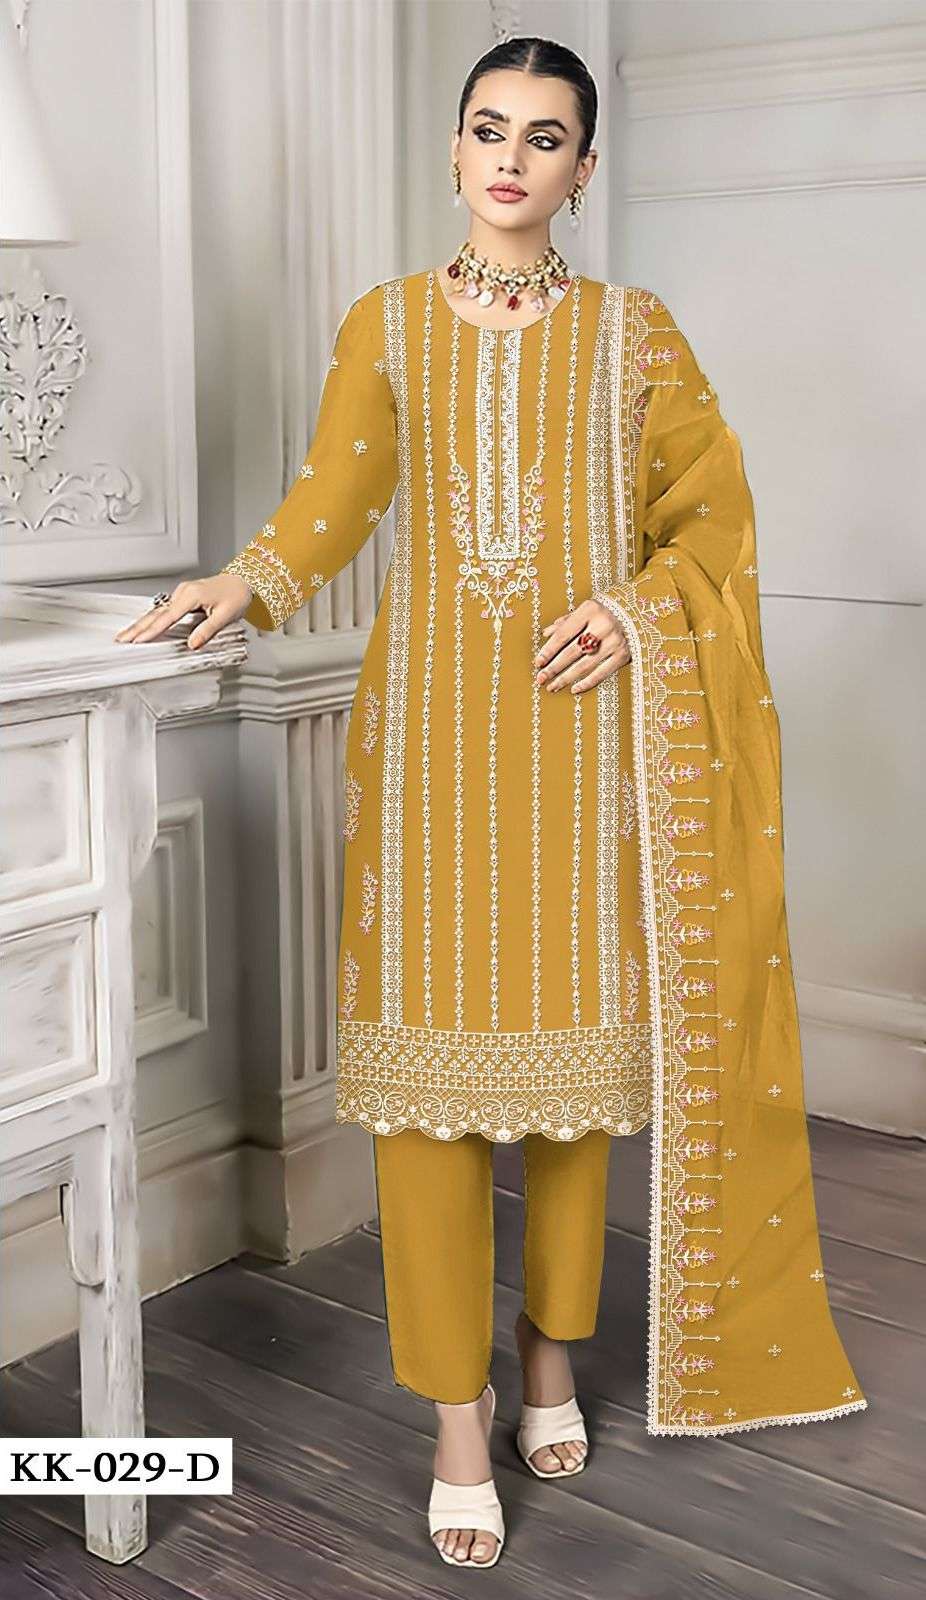 kross kulture kk 029 series fancy look designer pakistani salwar suits online price surat